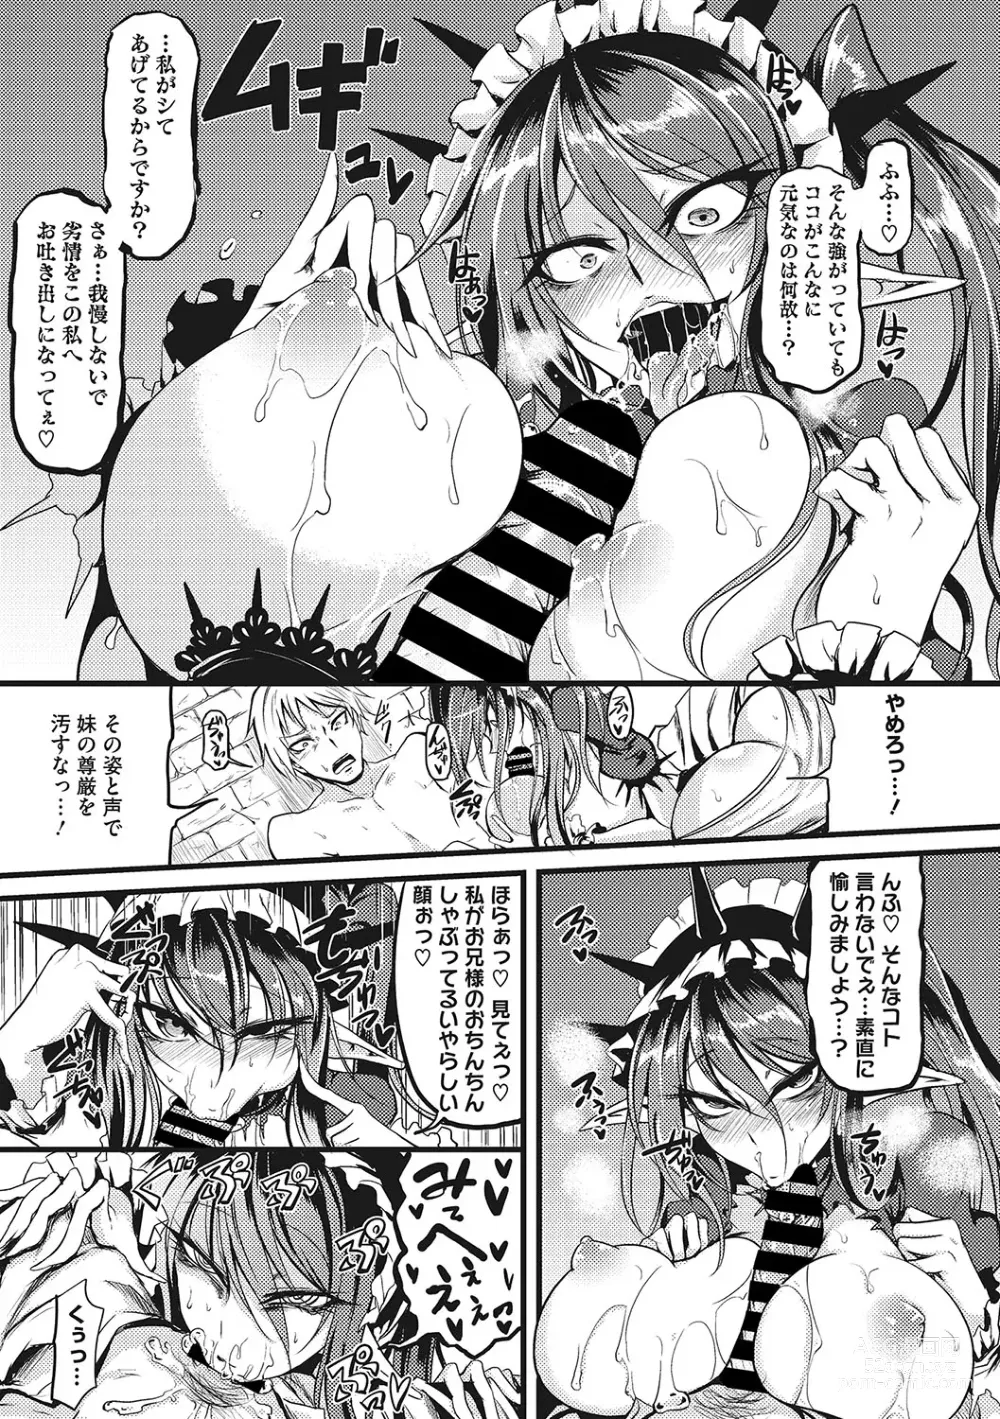 Page 276 of manga Sanpai Shoujo